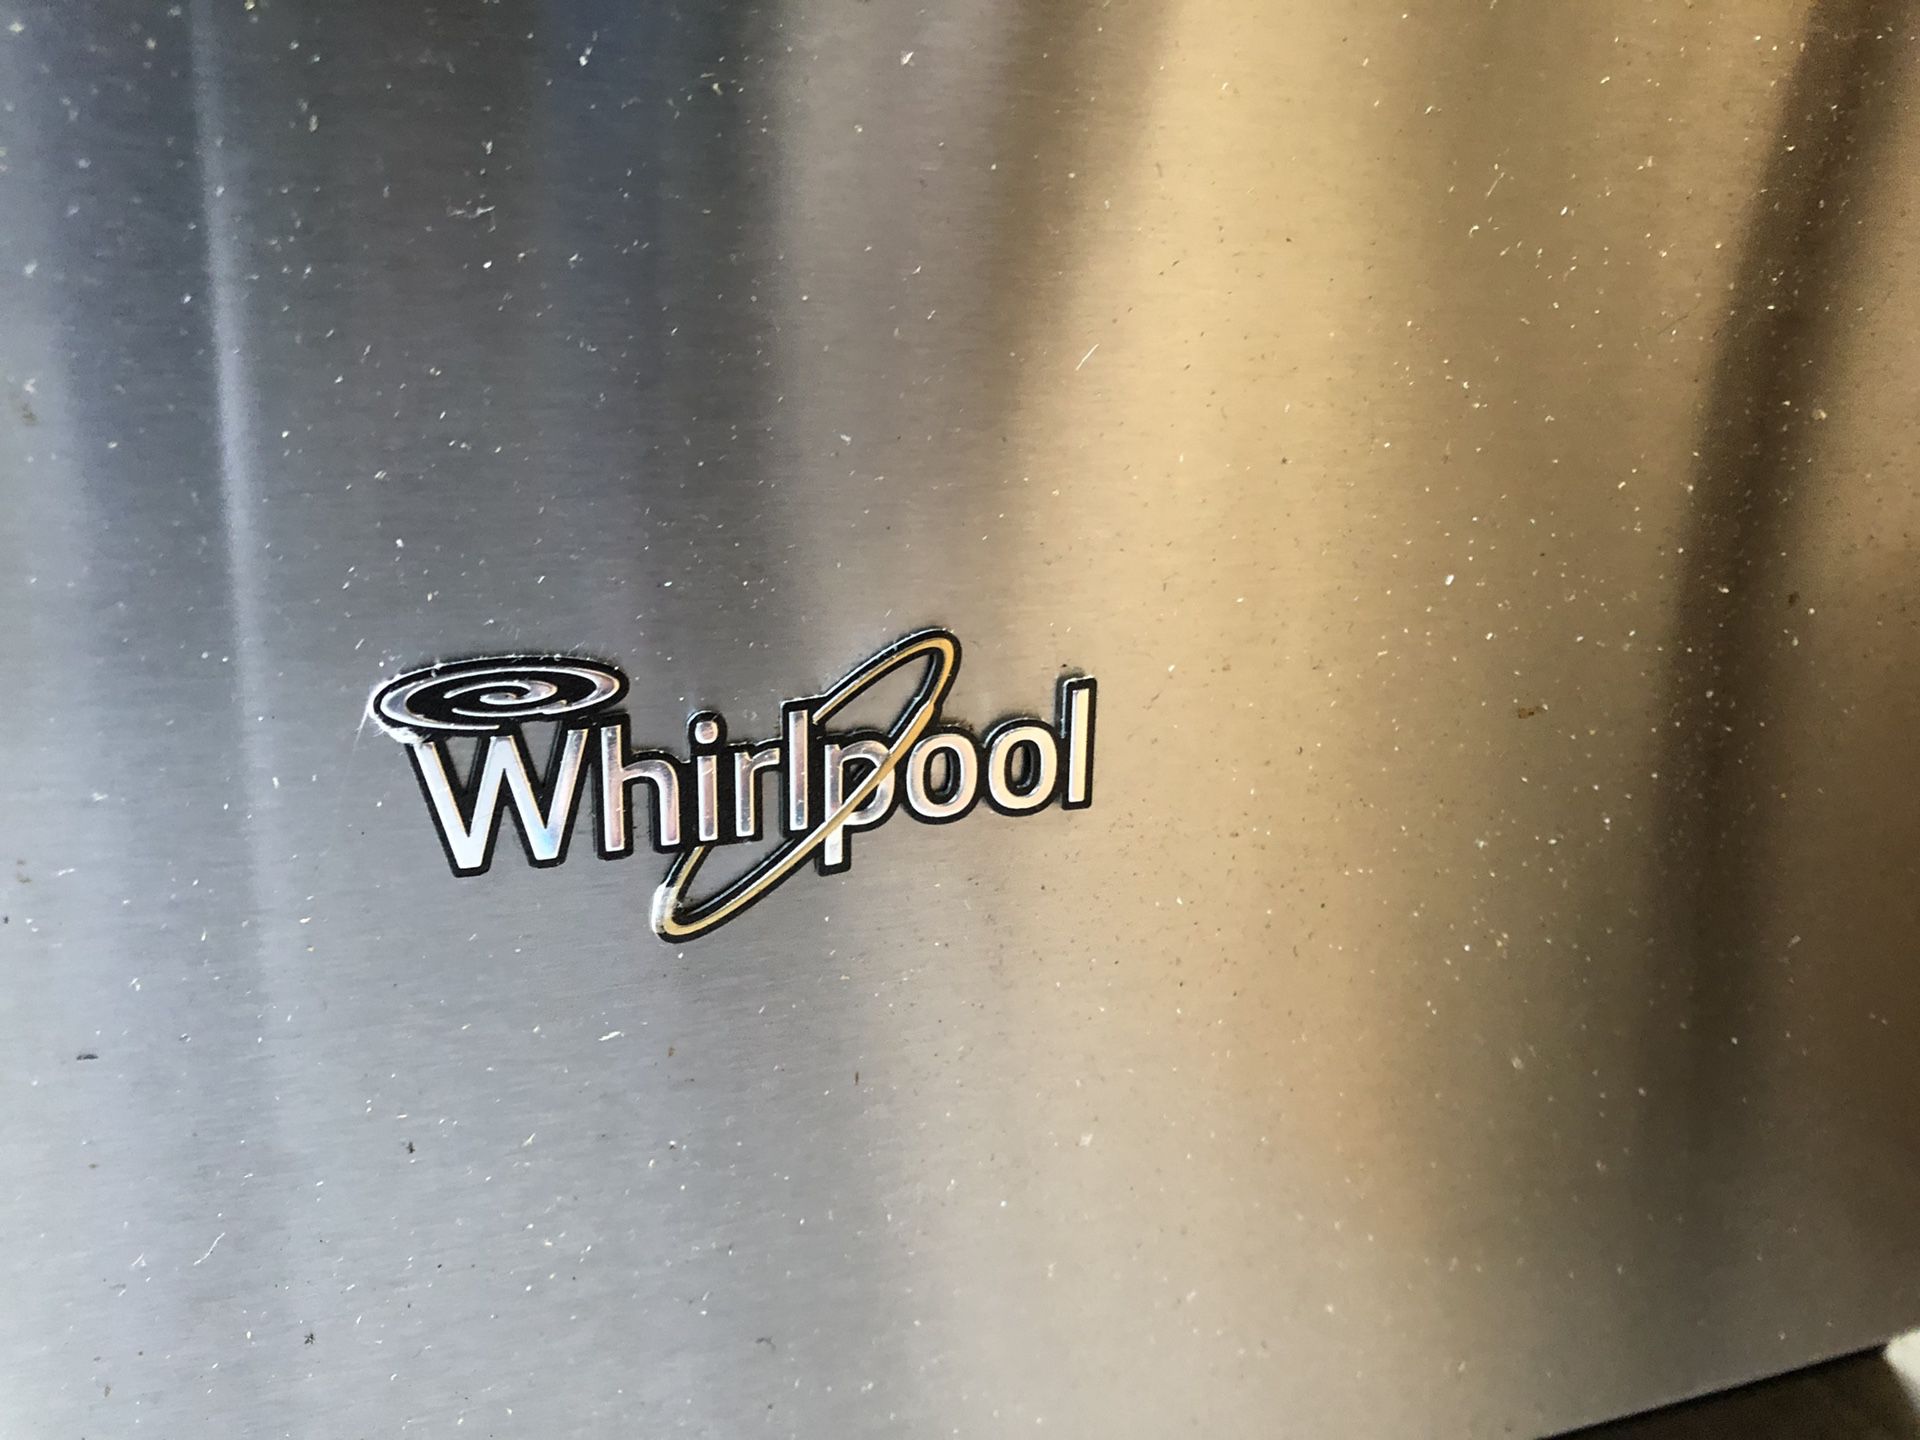 Whirlpool kitchen appliances